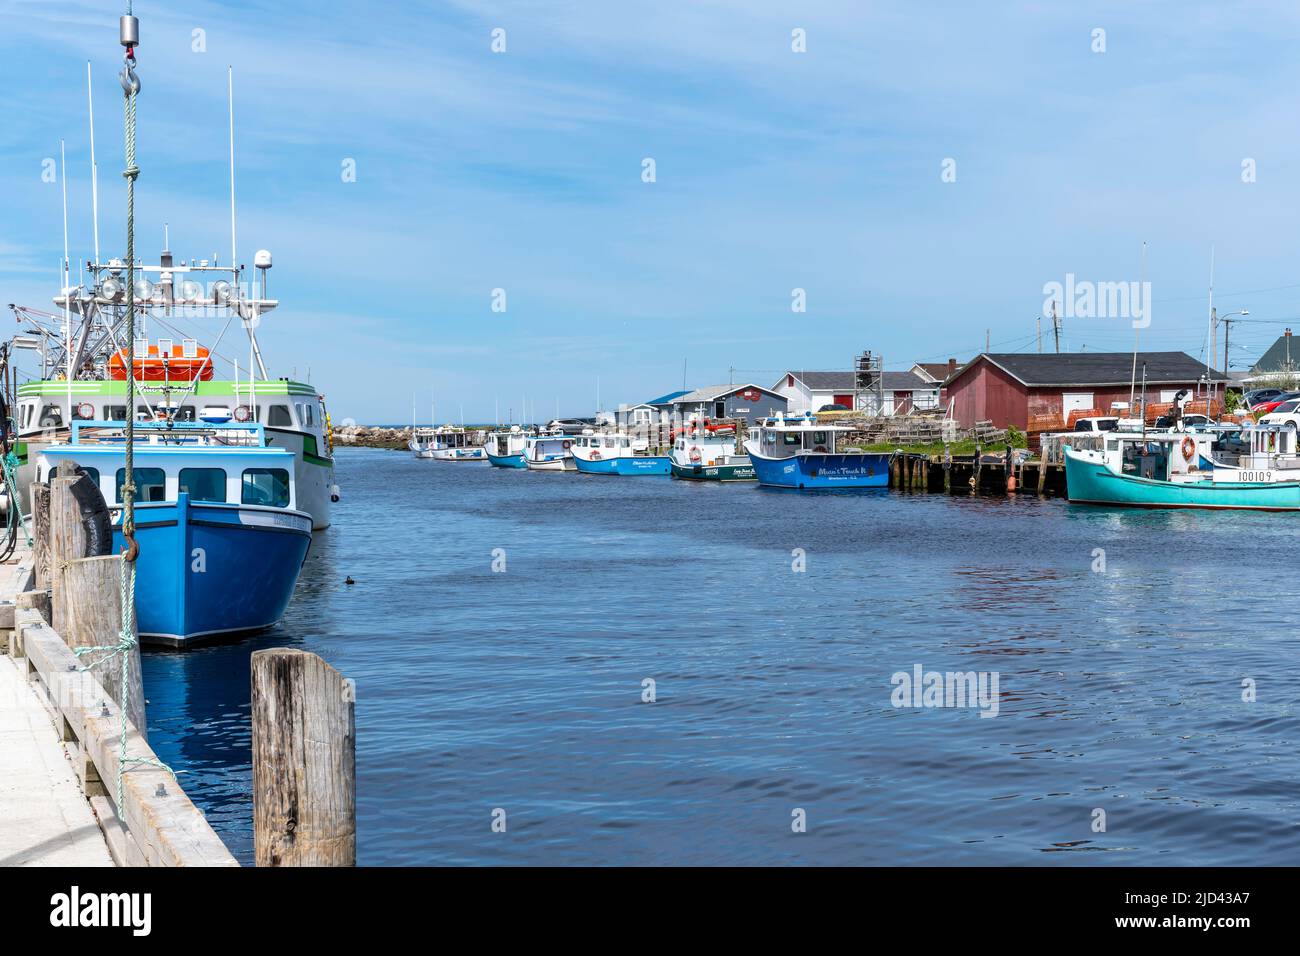 Barche di aragosta ormeggiate al porto di Glace Bay Cape Breton Nova Scotia. La pesca dell'aragosta è molto importante per l'economia della regione. Foto Stock